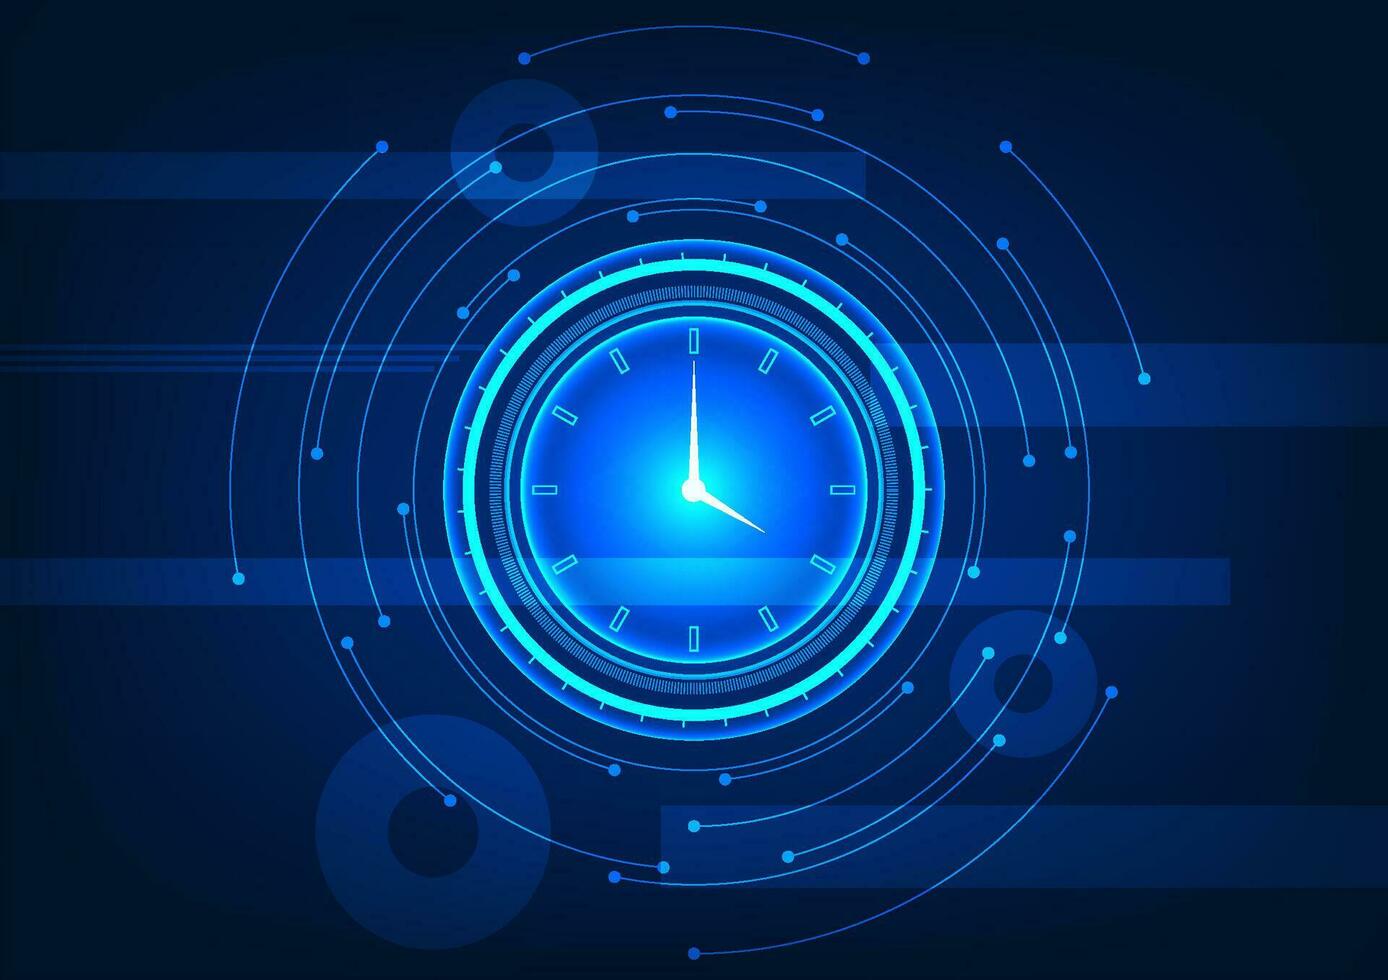 hora tecnología el espalda de el reloj tiene un geométrico elemento en el marcar. muestra el hora ese determina el trabajando horas dentro el organización a trabajo hacia el objetivos. vector